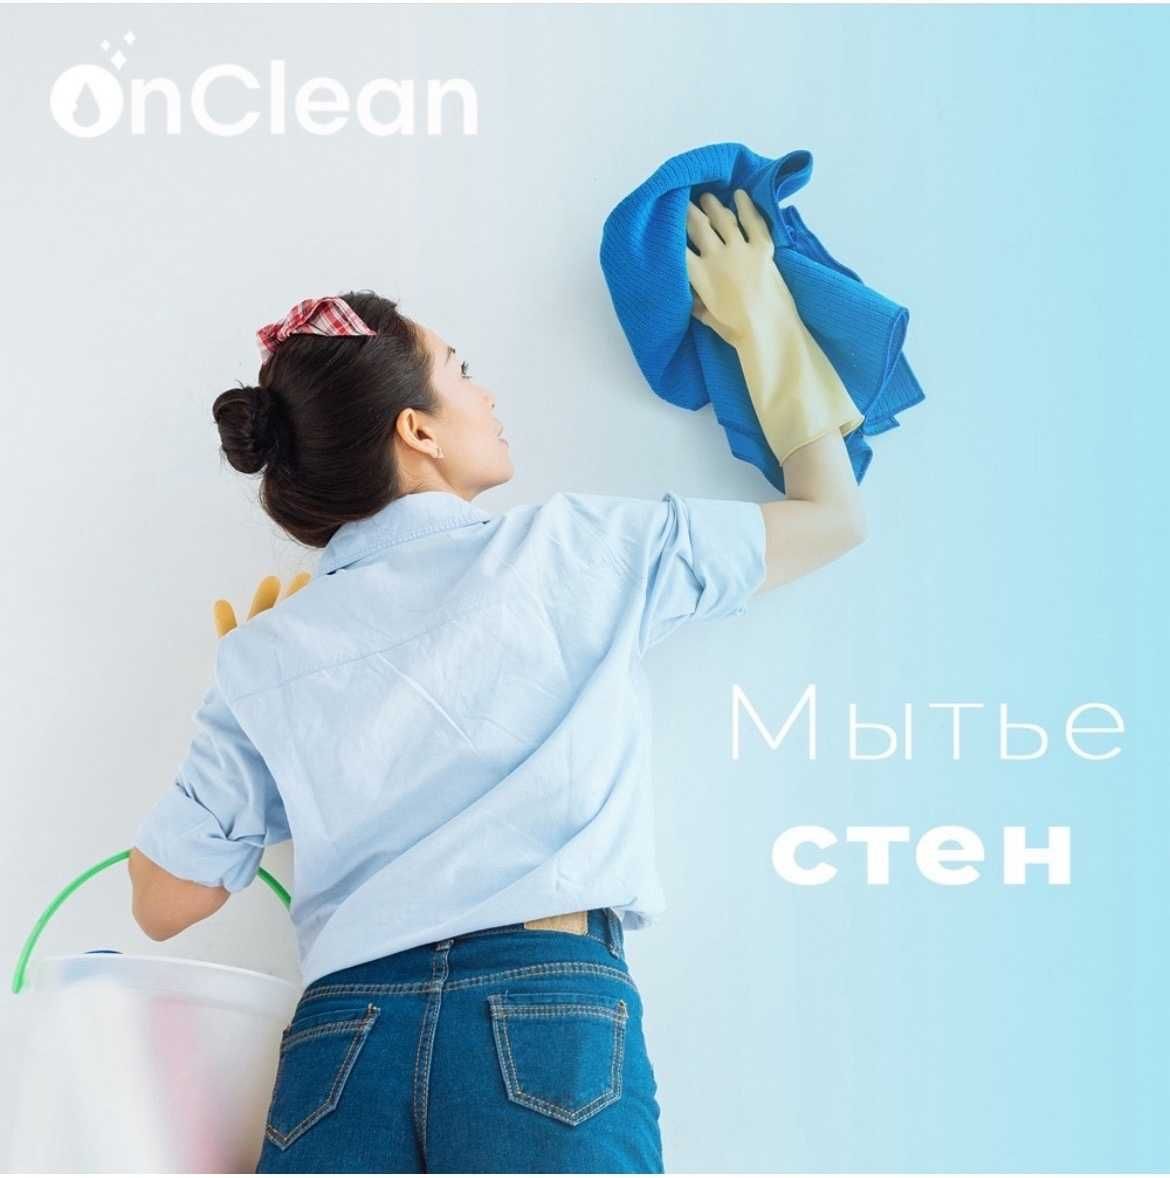 Продам бизнес в Алматы. Клининг. 700тыс -1 млн тг чистыми в месяц